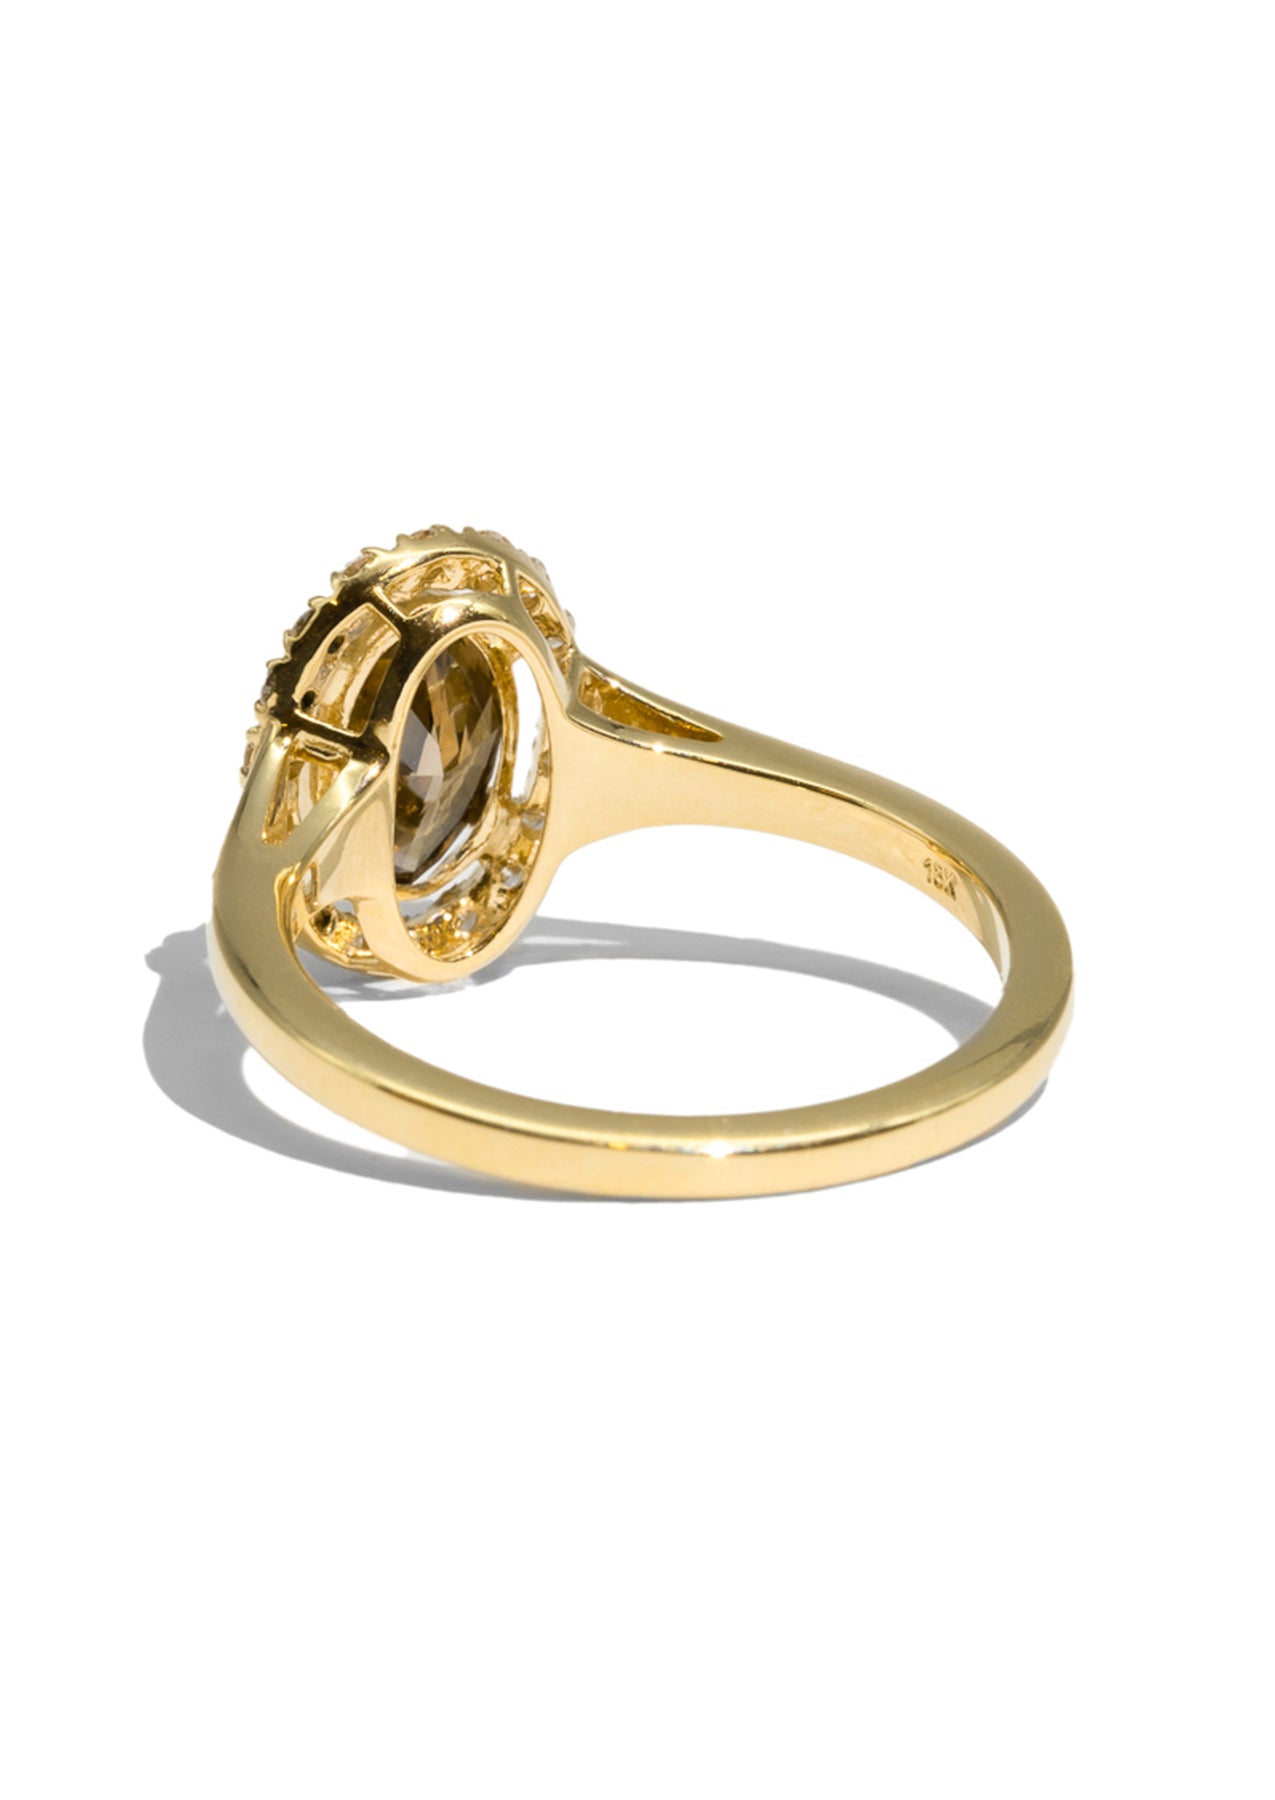 The Iris Cognac Diamond Ring